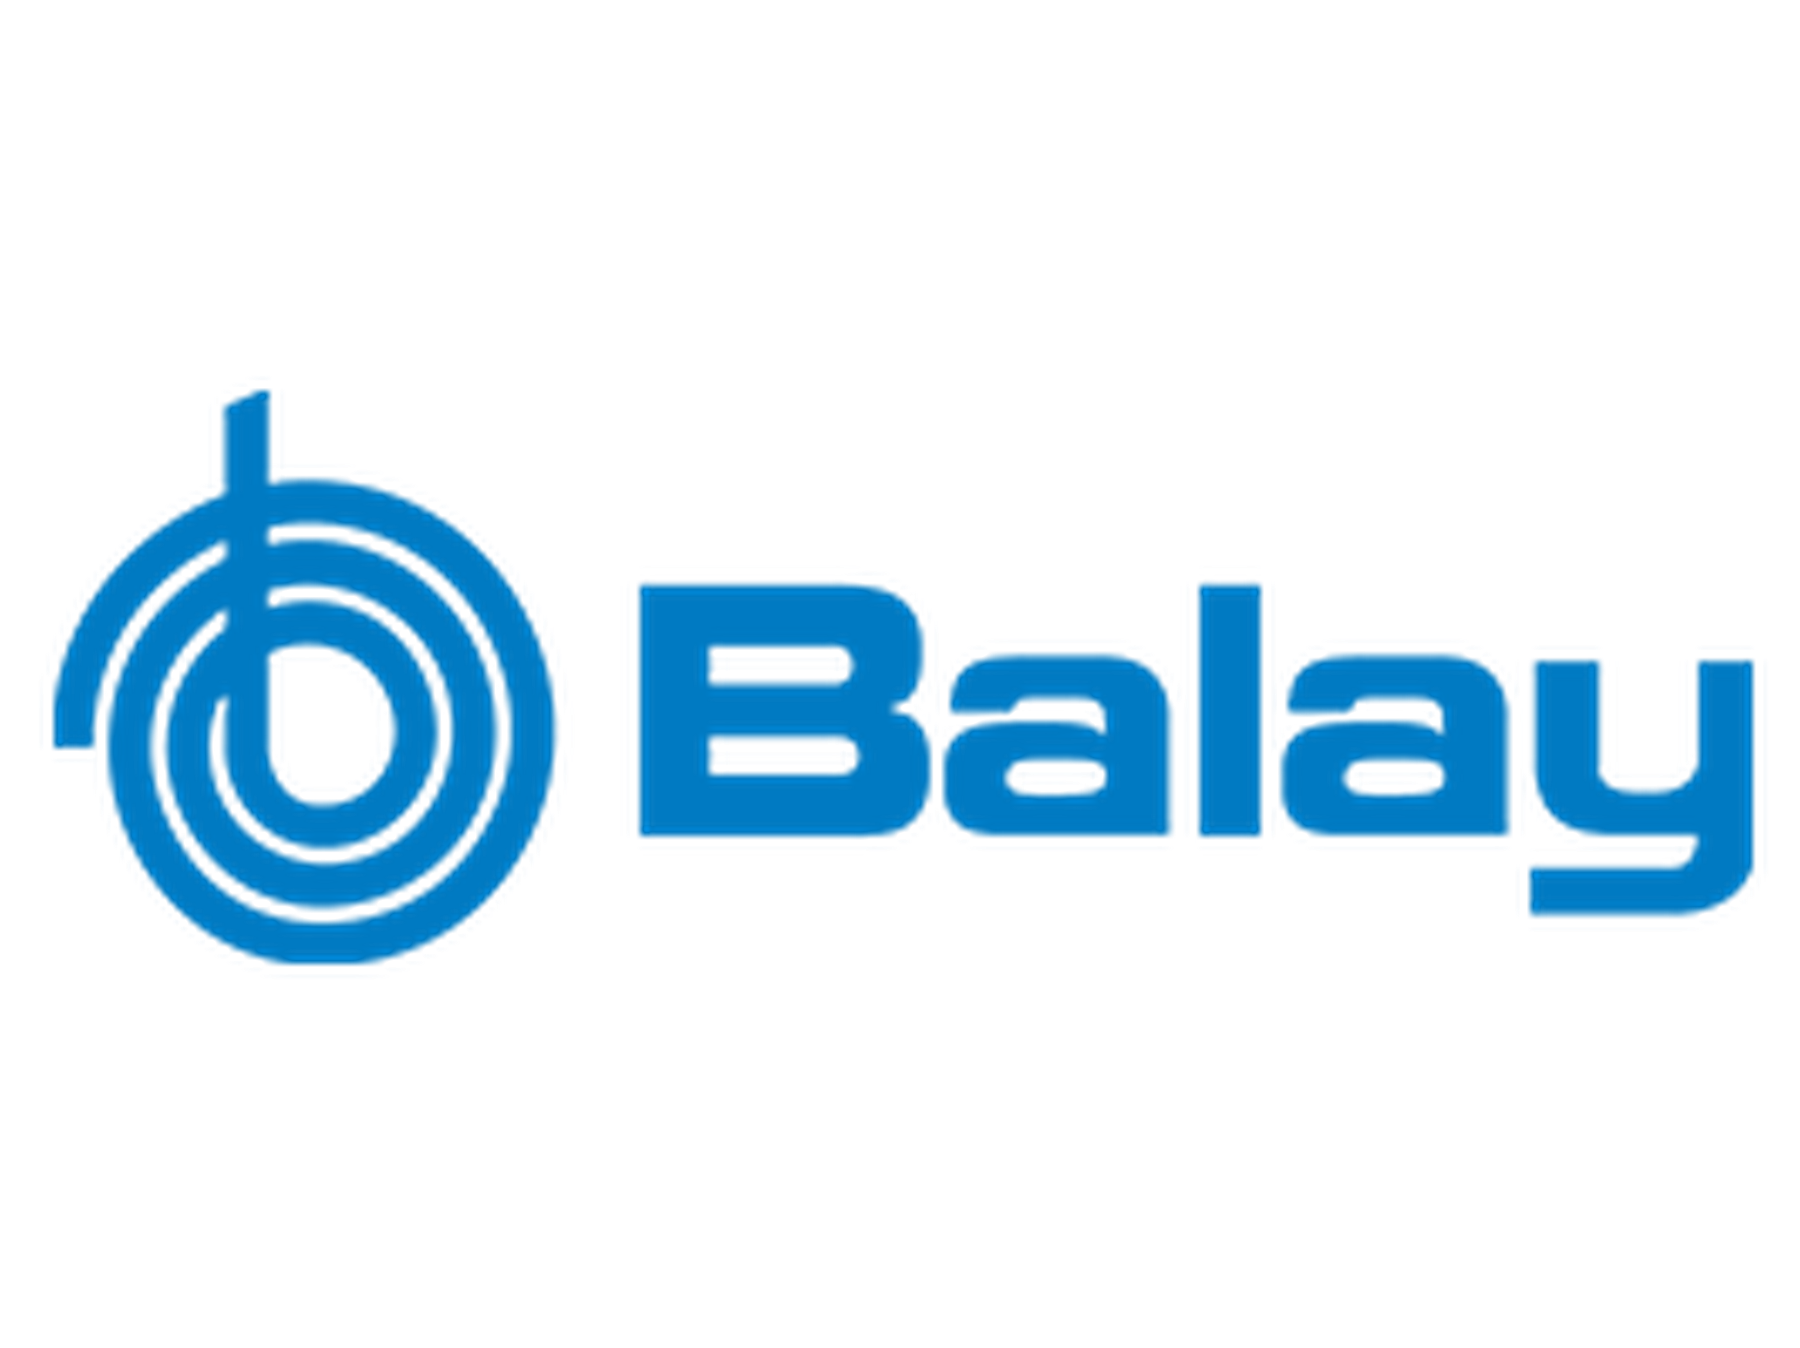 Código promocional Balay